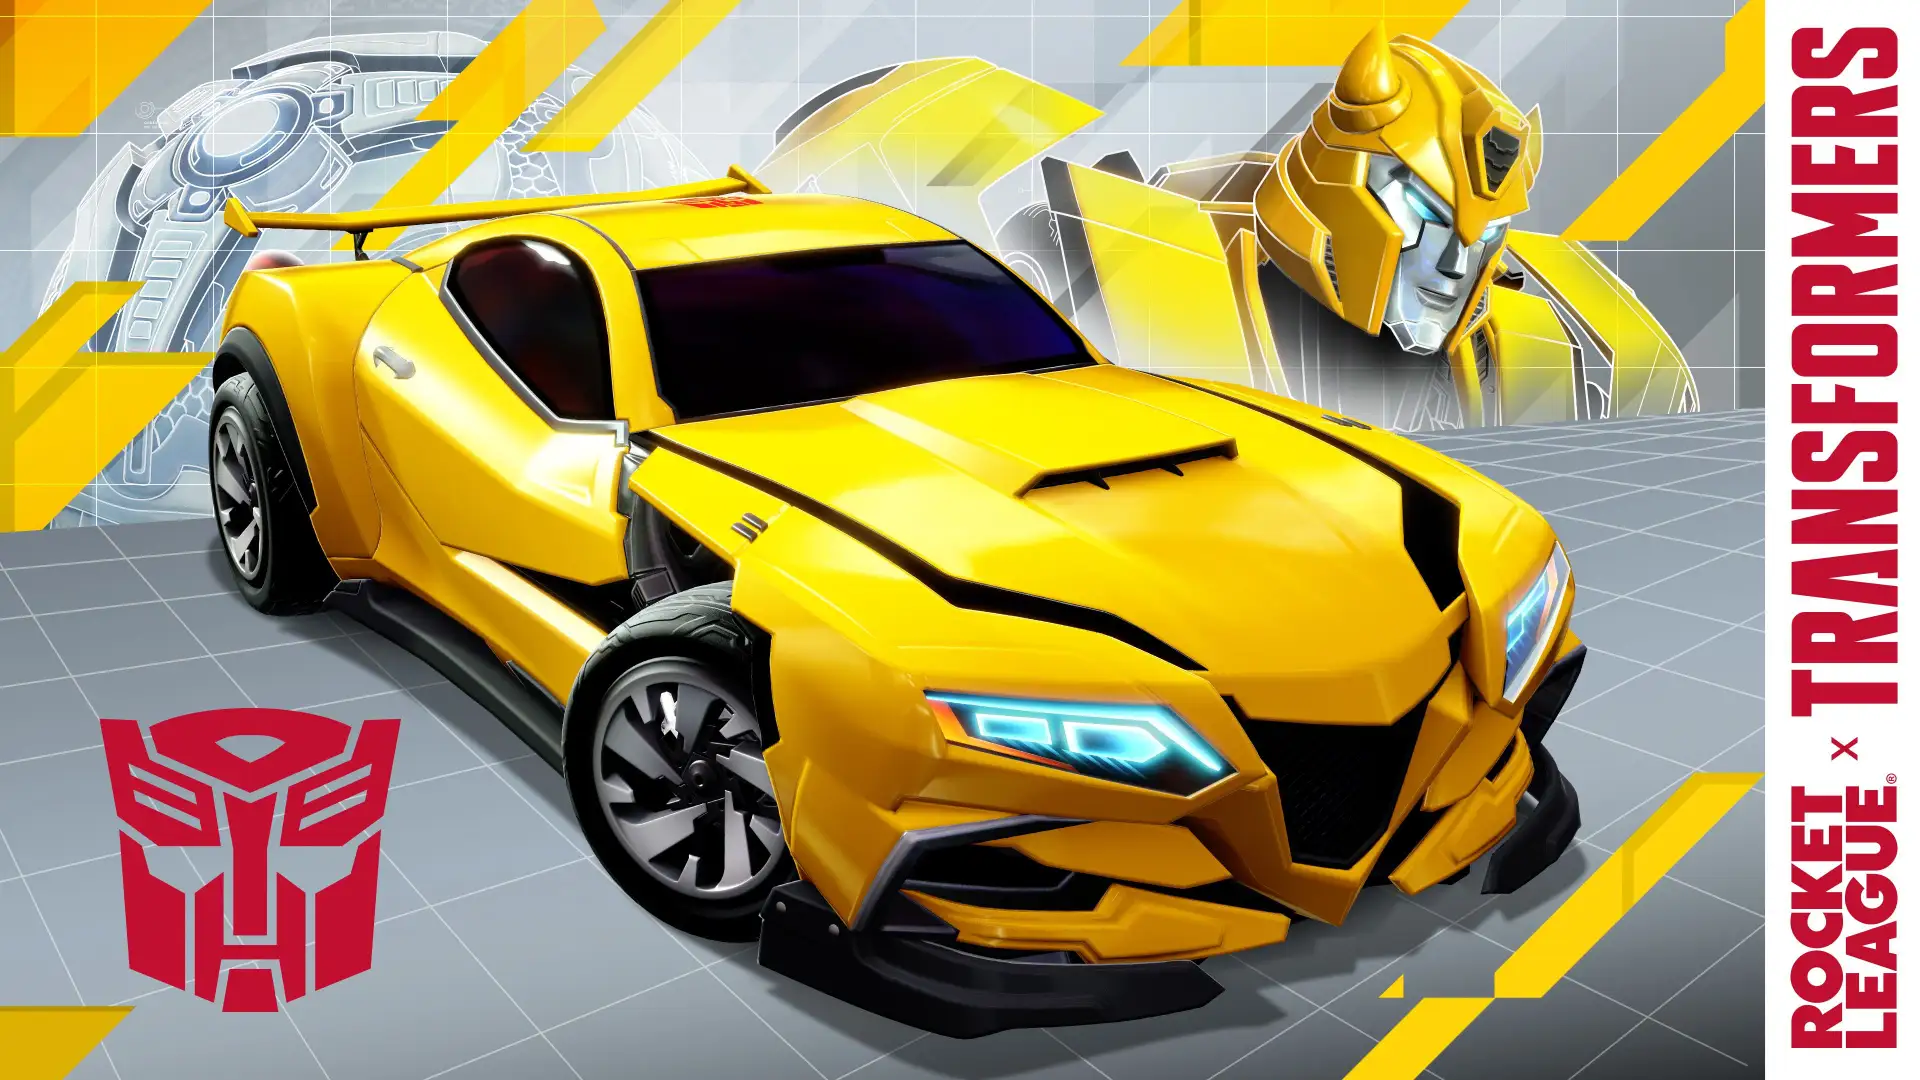 El auto de Bumblebee, su transformación en robot para celebrar y más contenido de Transformers llega a Rocket League en un lote en junio.